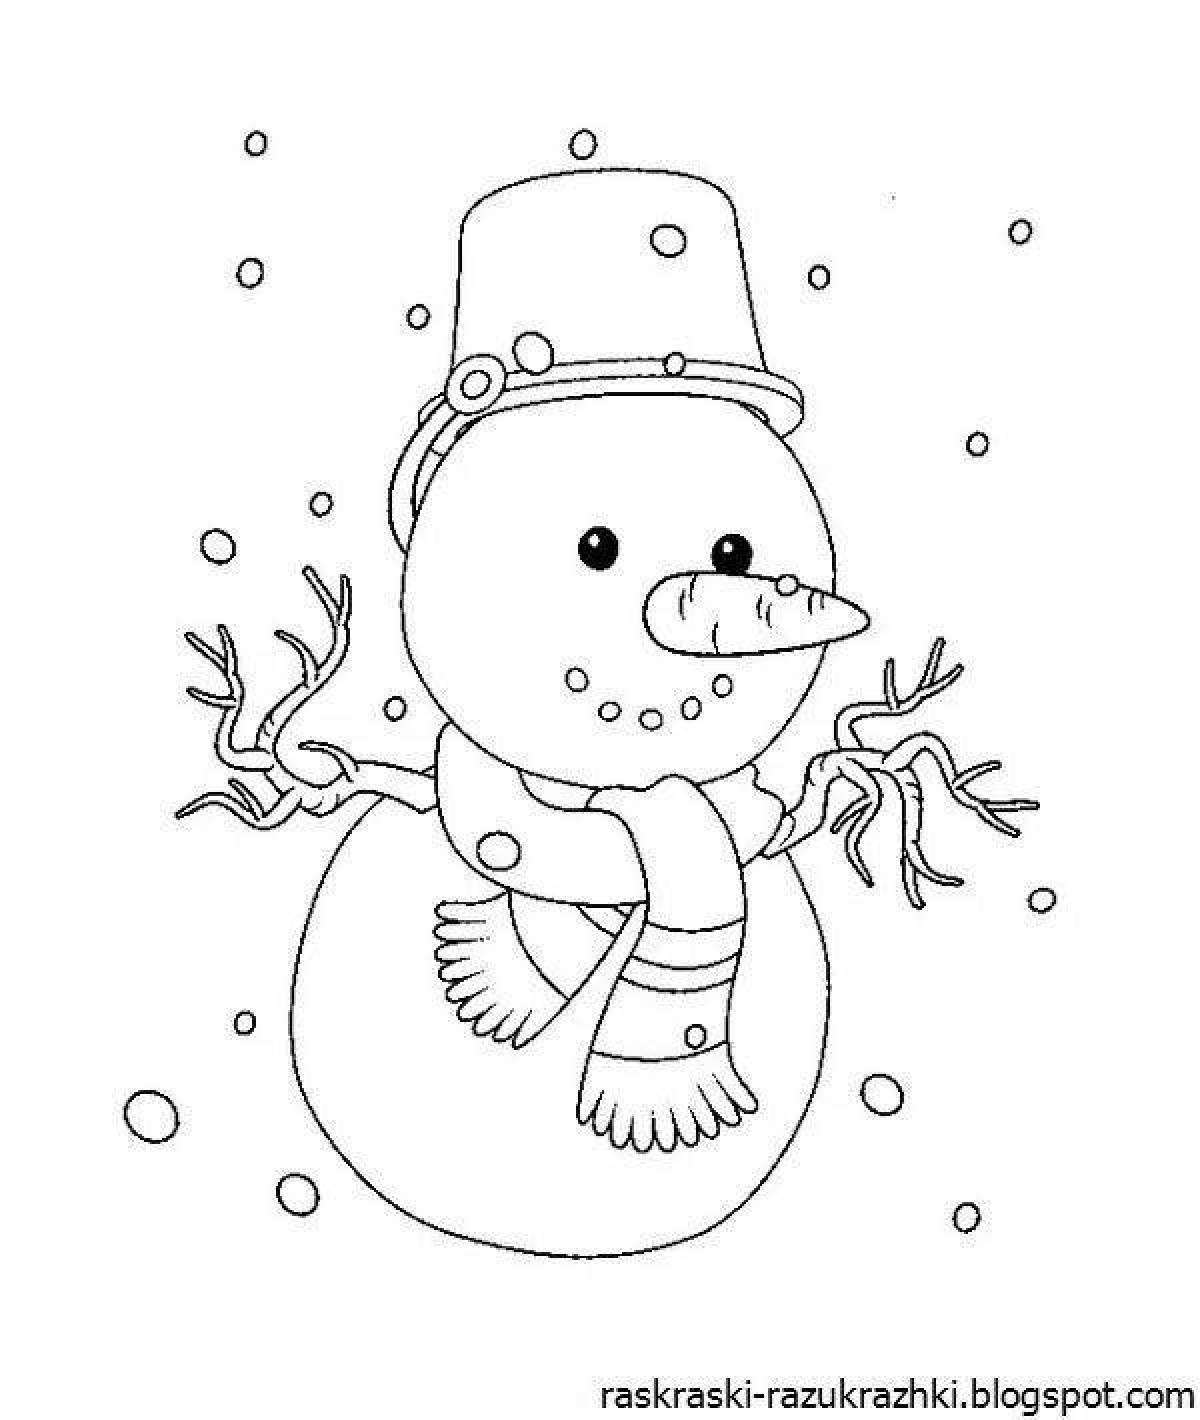 Великолепная раскраска снеговик для детей 6-7 лет